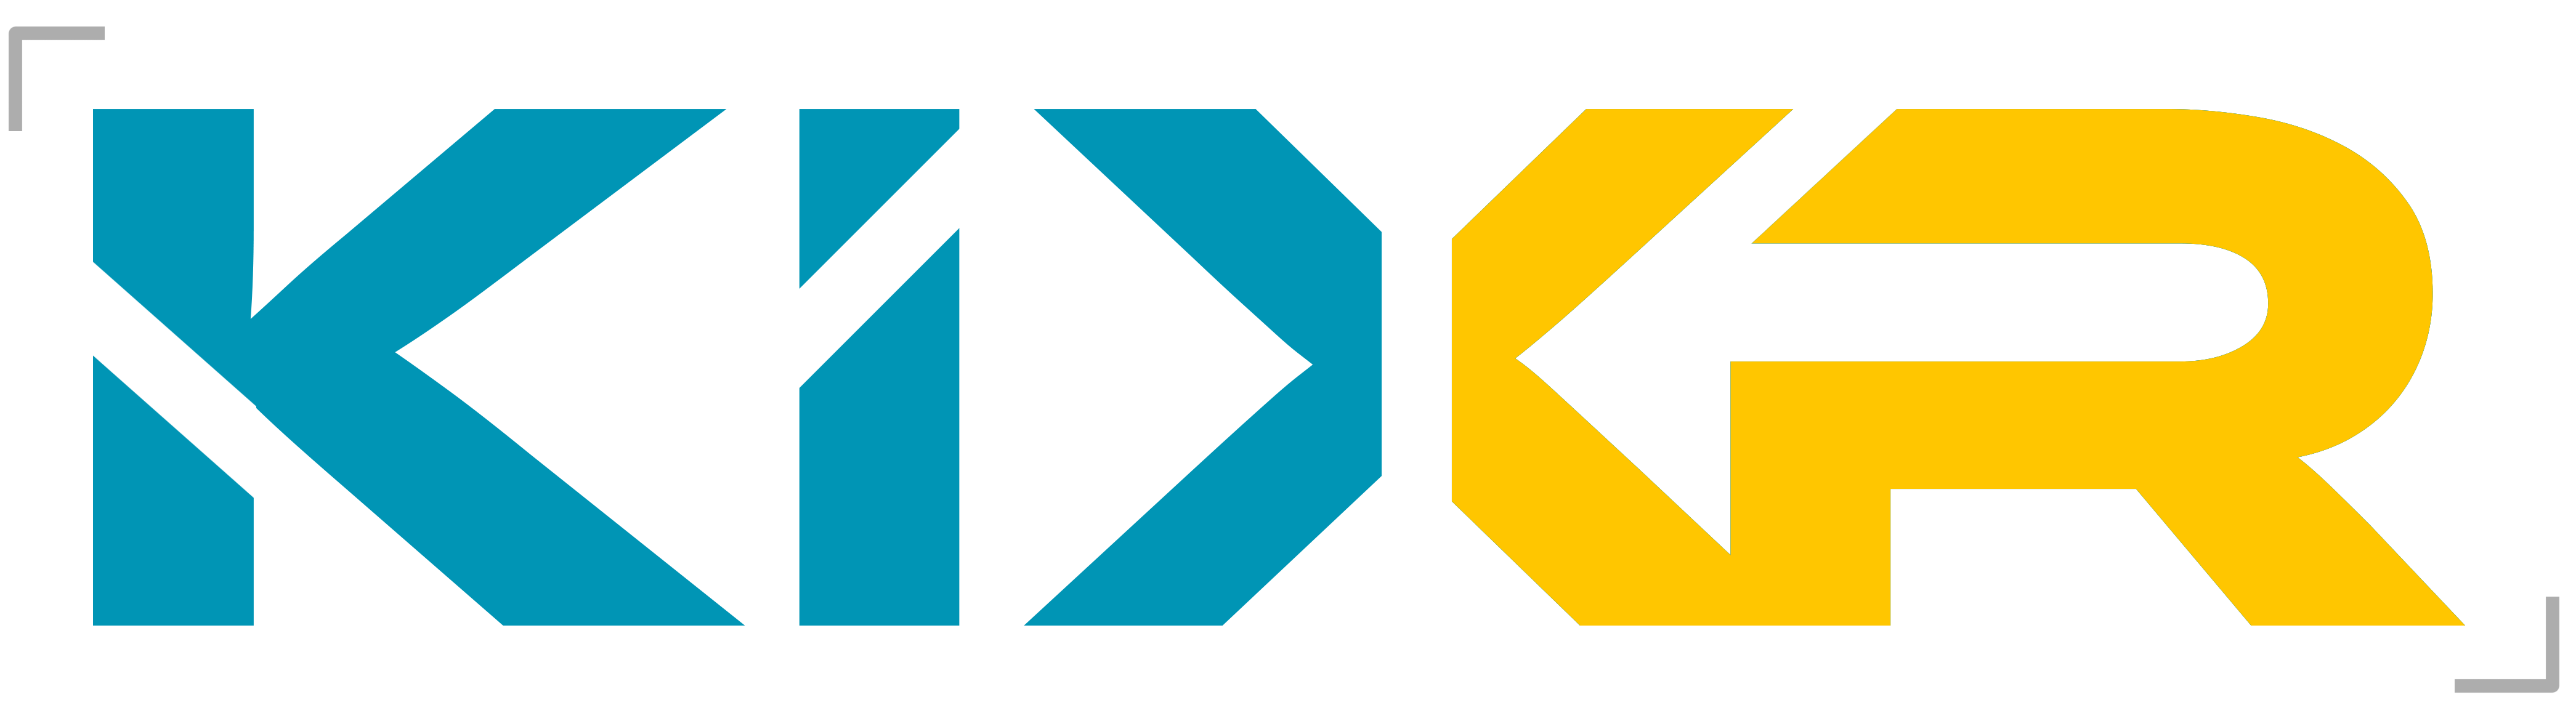 KiXR Light Logo